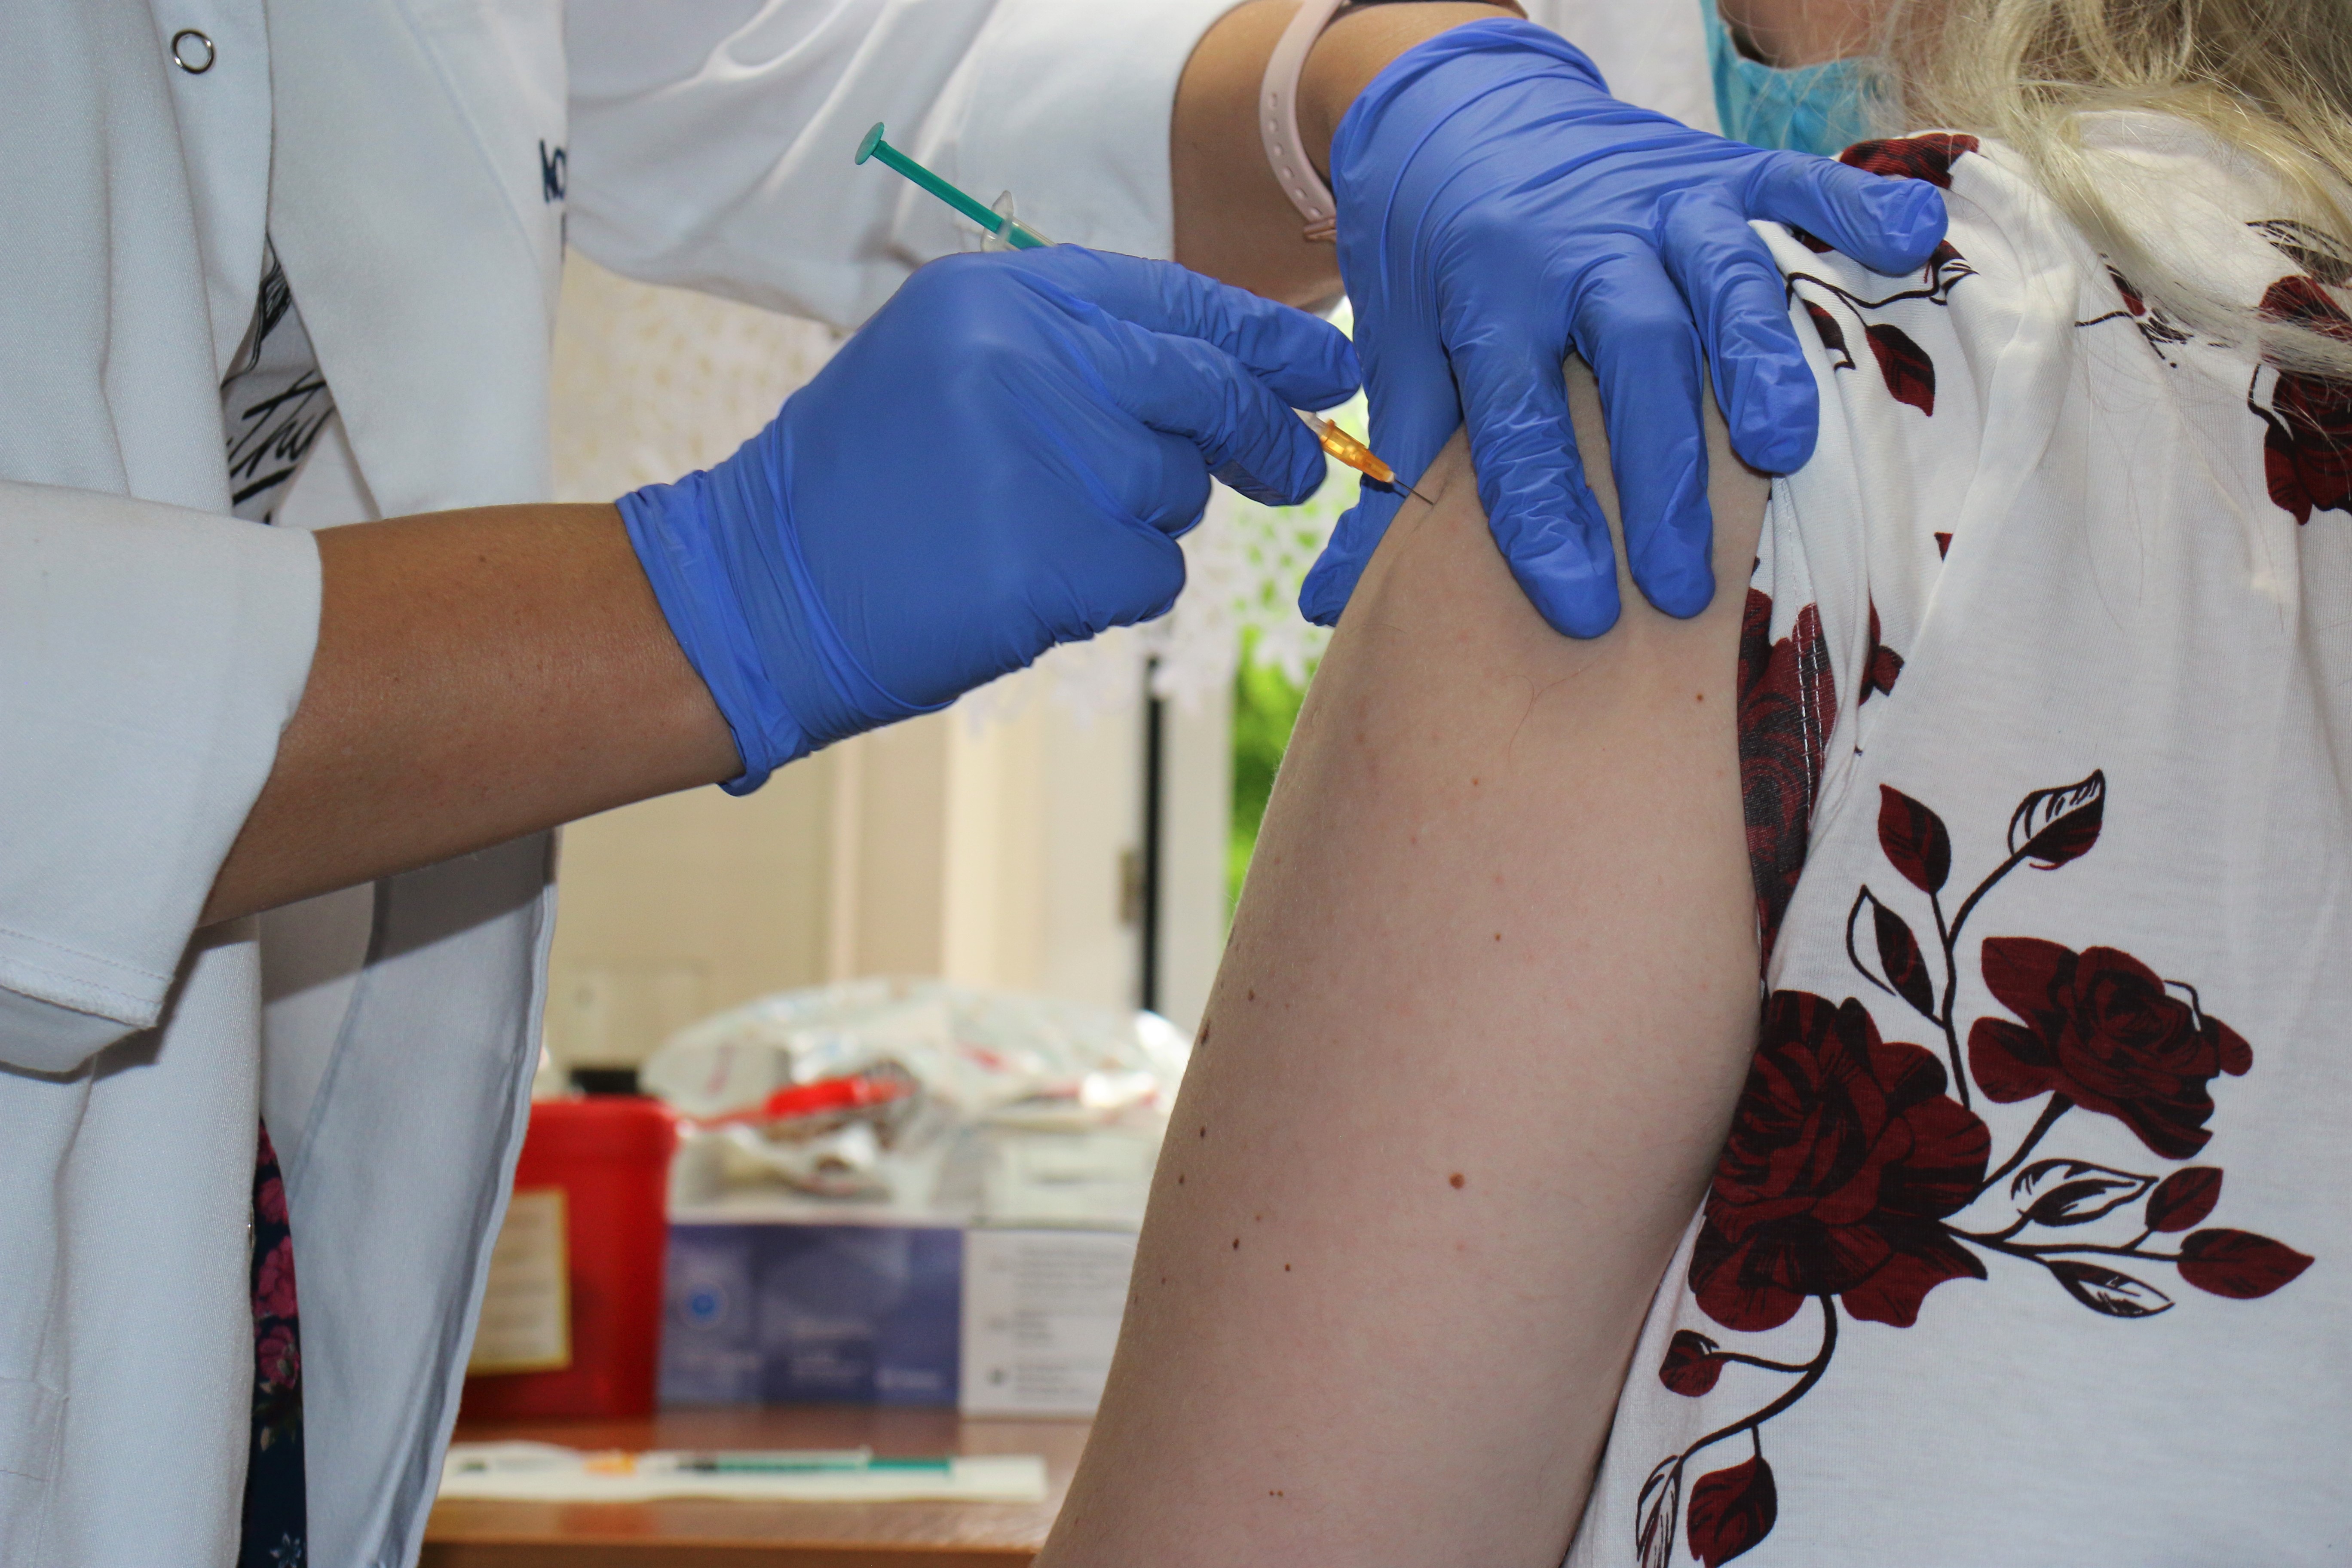 Bezpłatne szczepienia przeciw grypie. Miejski program dla osób w wieku 55+